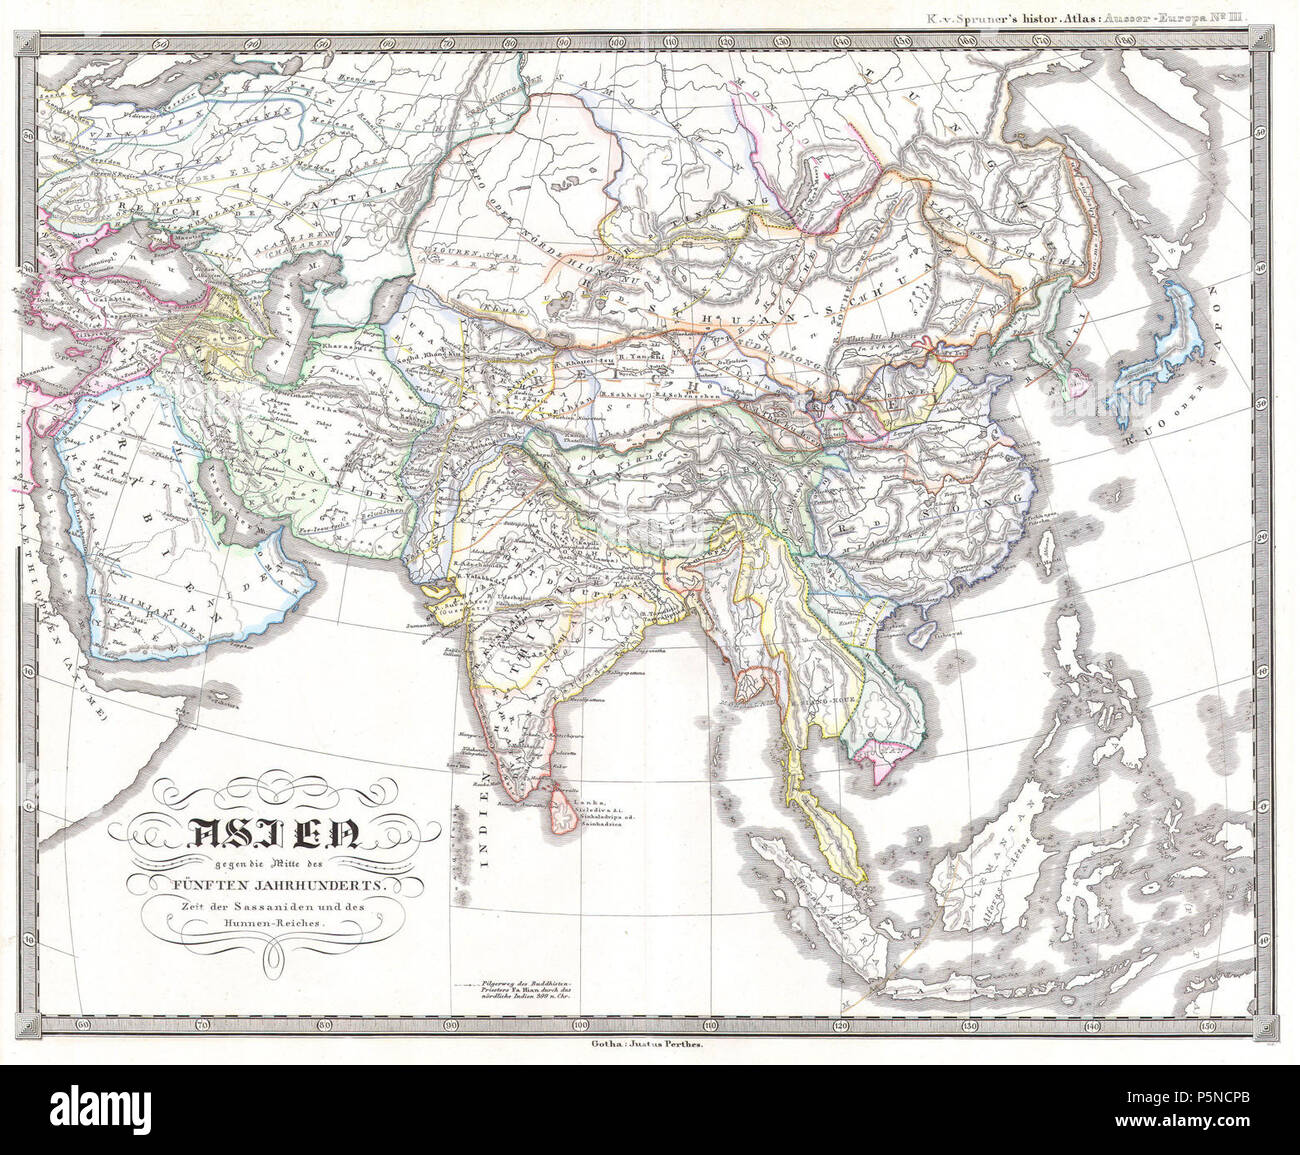 1855 Spruner Karte von Asien im 5. Jahrhundert (Sassanidenreich) - Geographicus - AsienFunften - spruneri-1855. Stockfoto